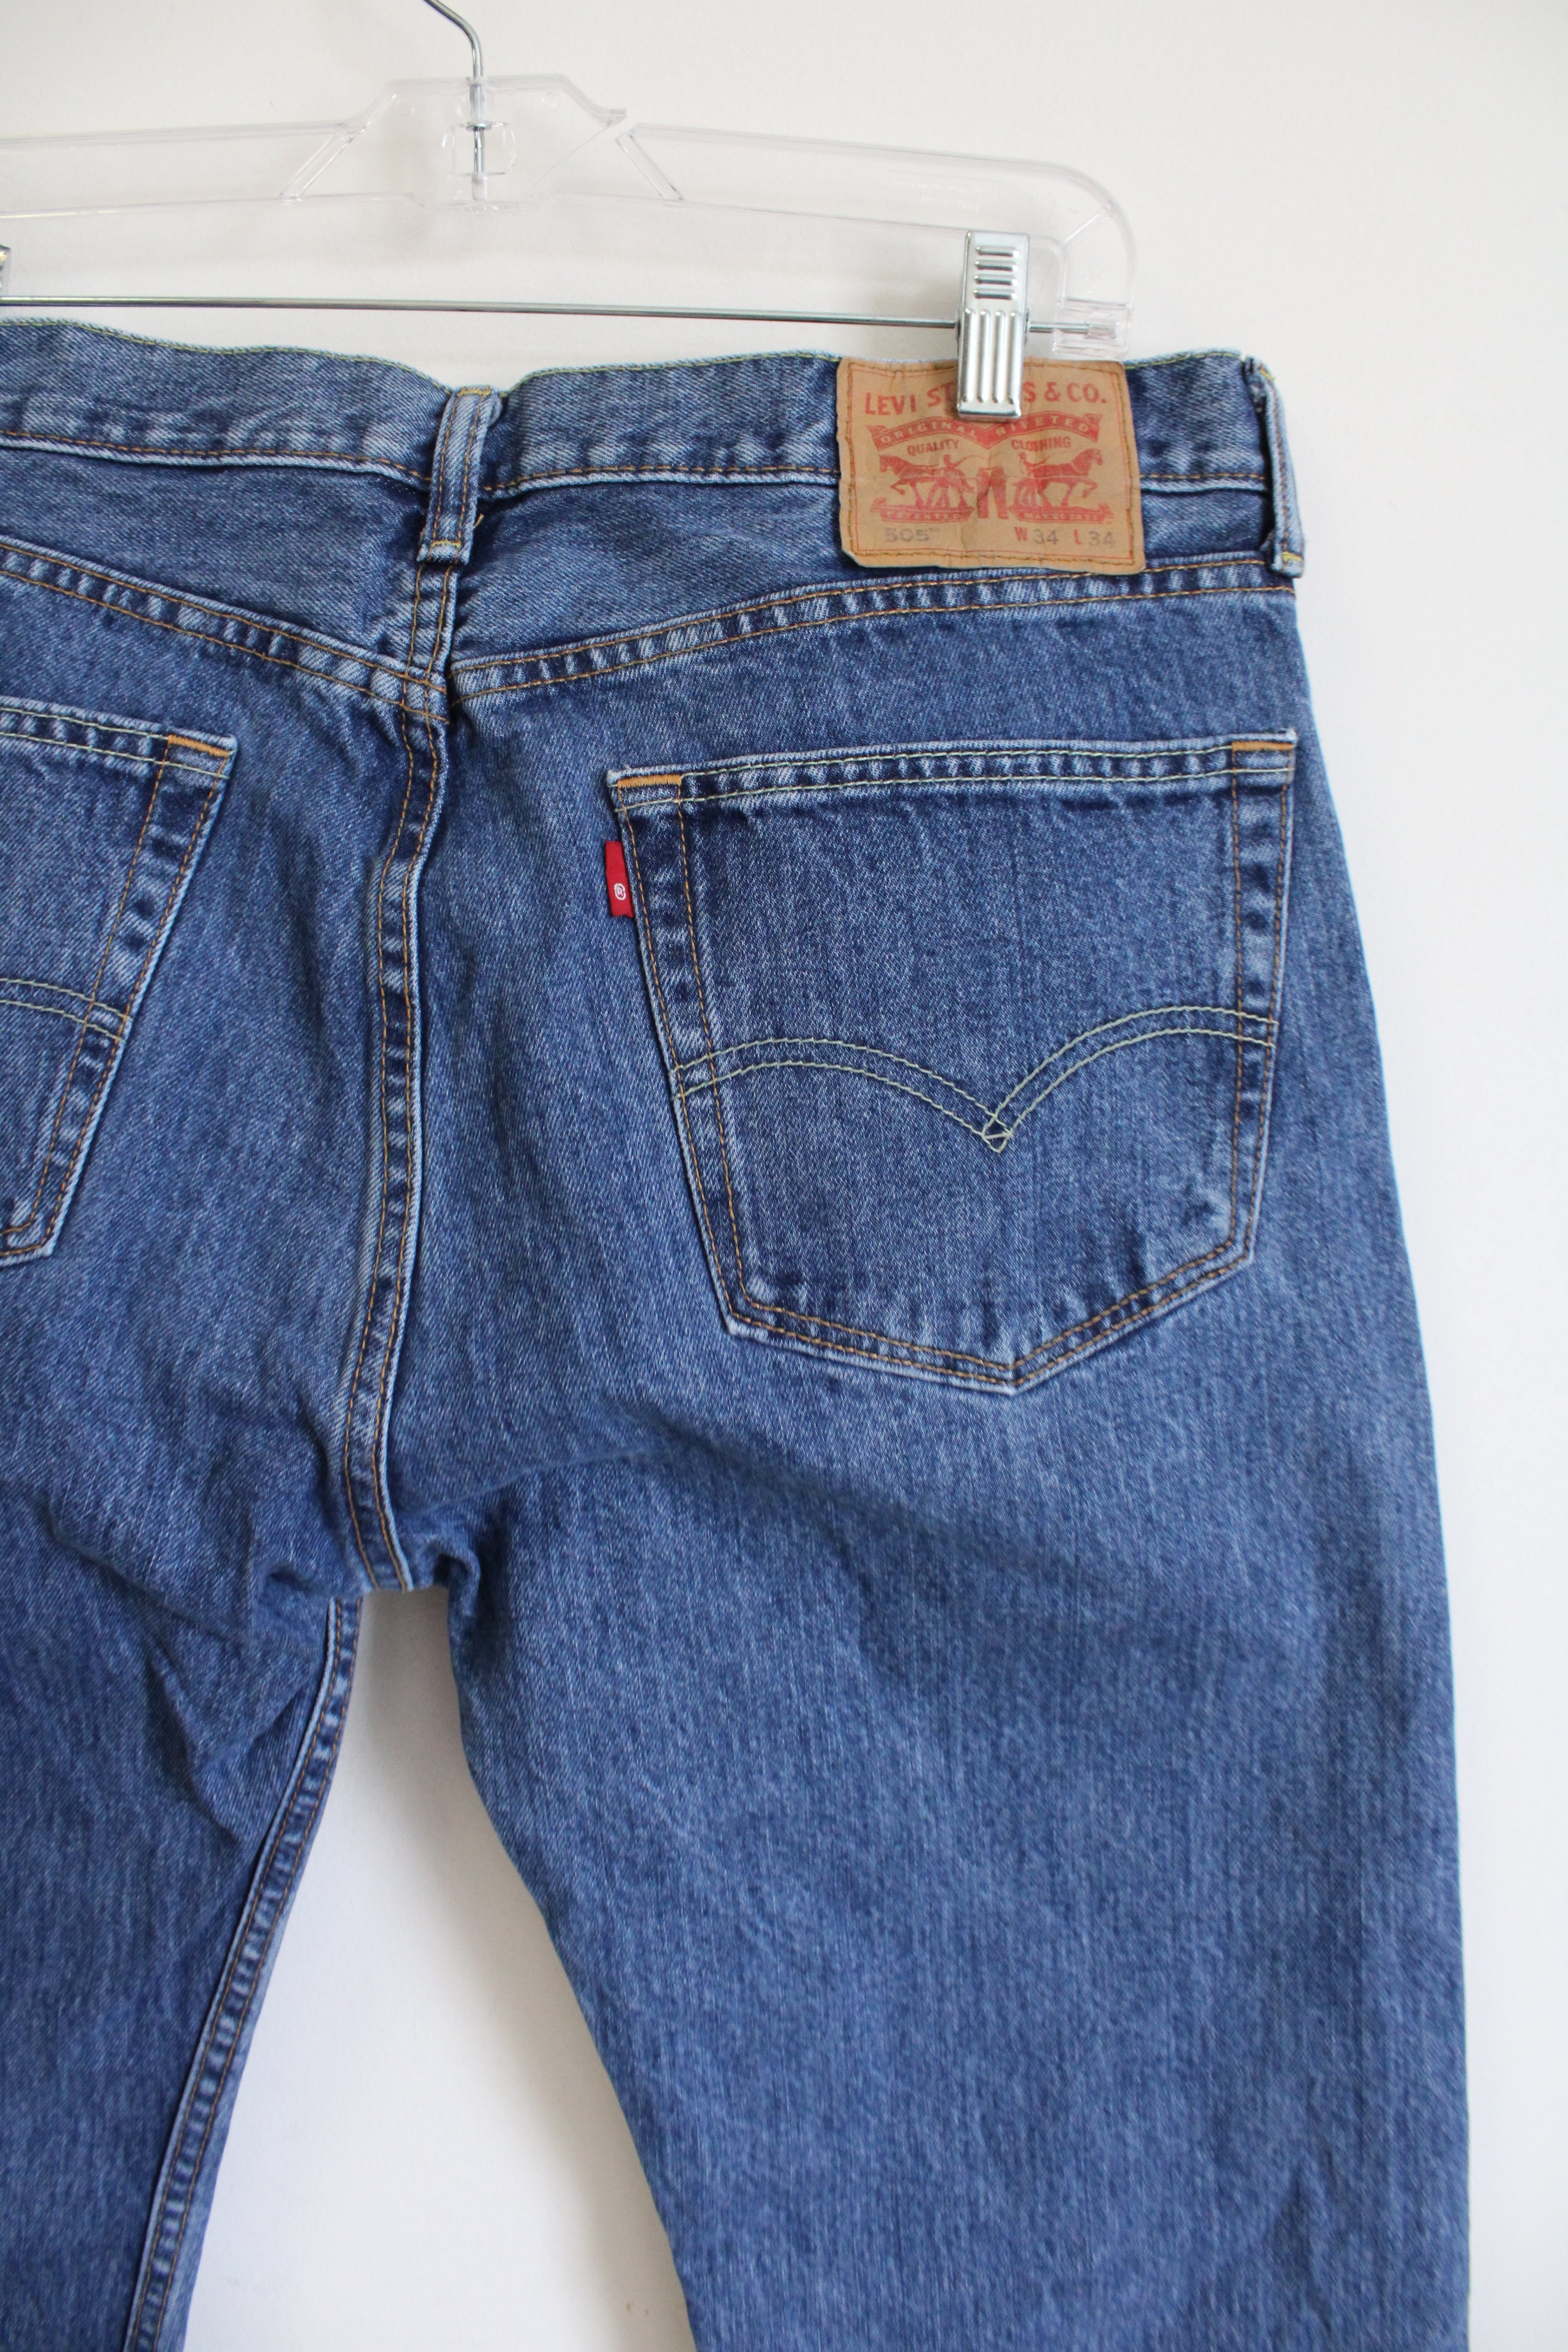 Levi's 505 Jeans | 34x34